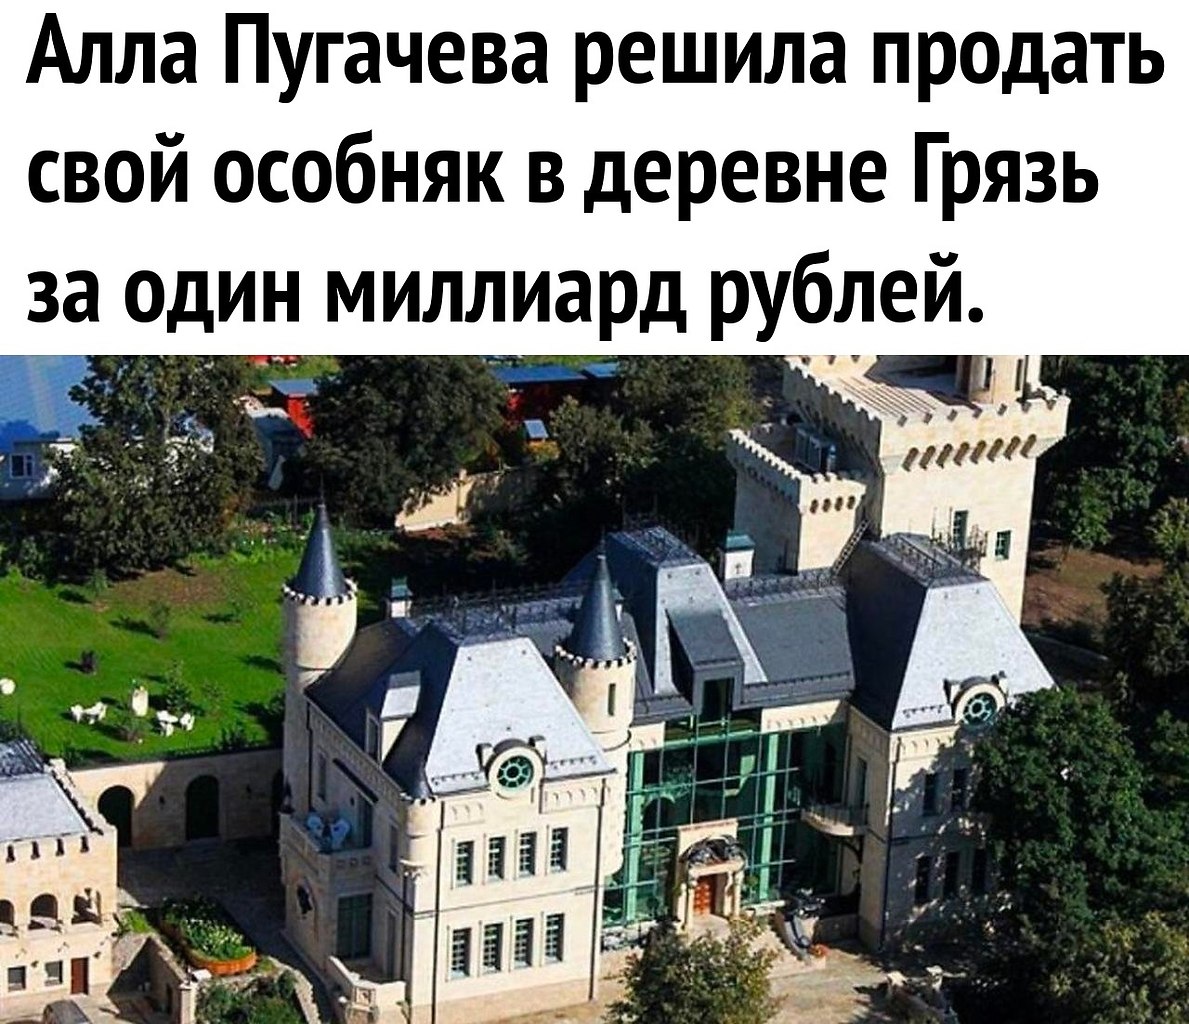 Пугачева продает замок в деревне грязь